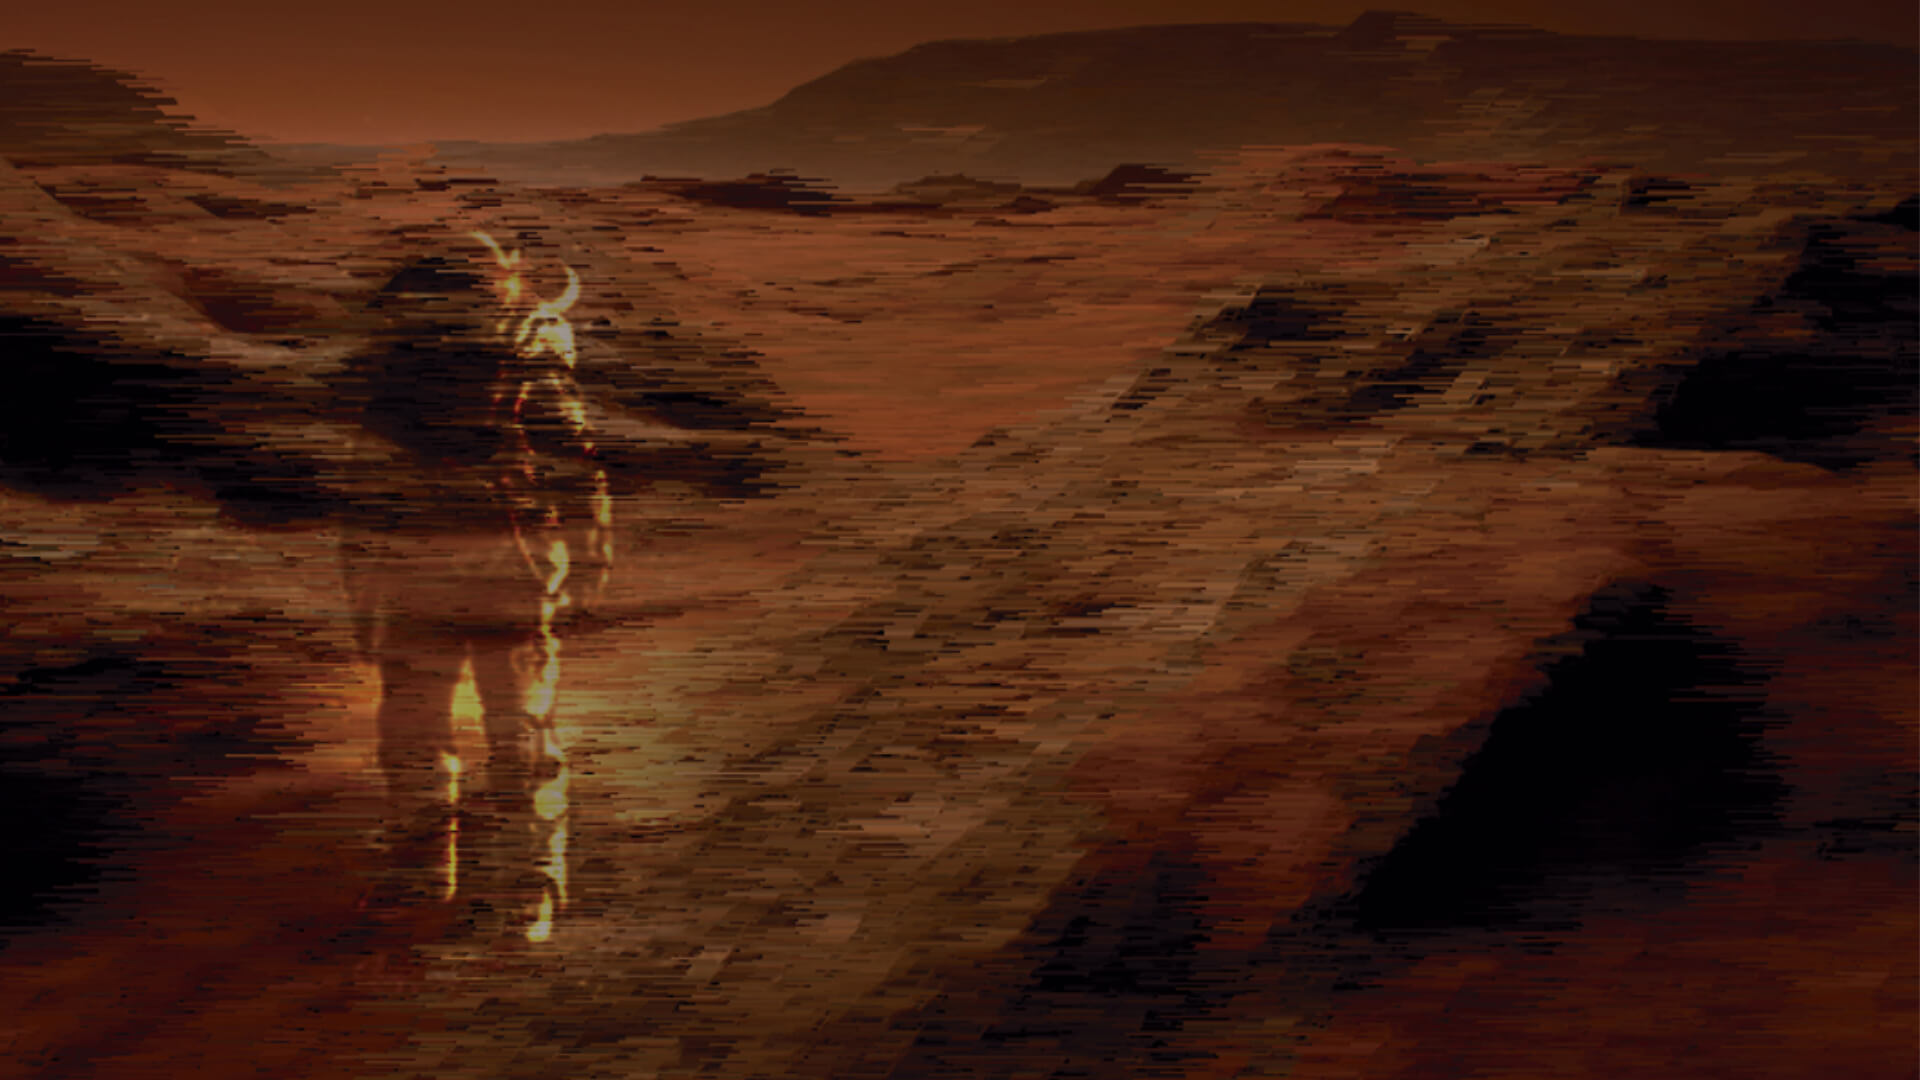 Composición gráfica de un astronauta en Marte